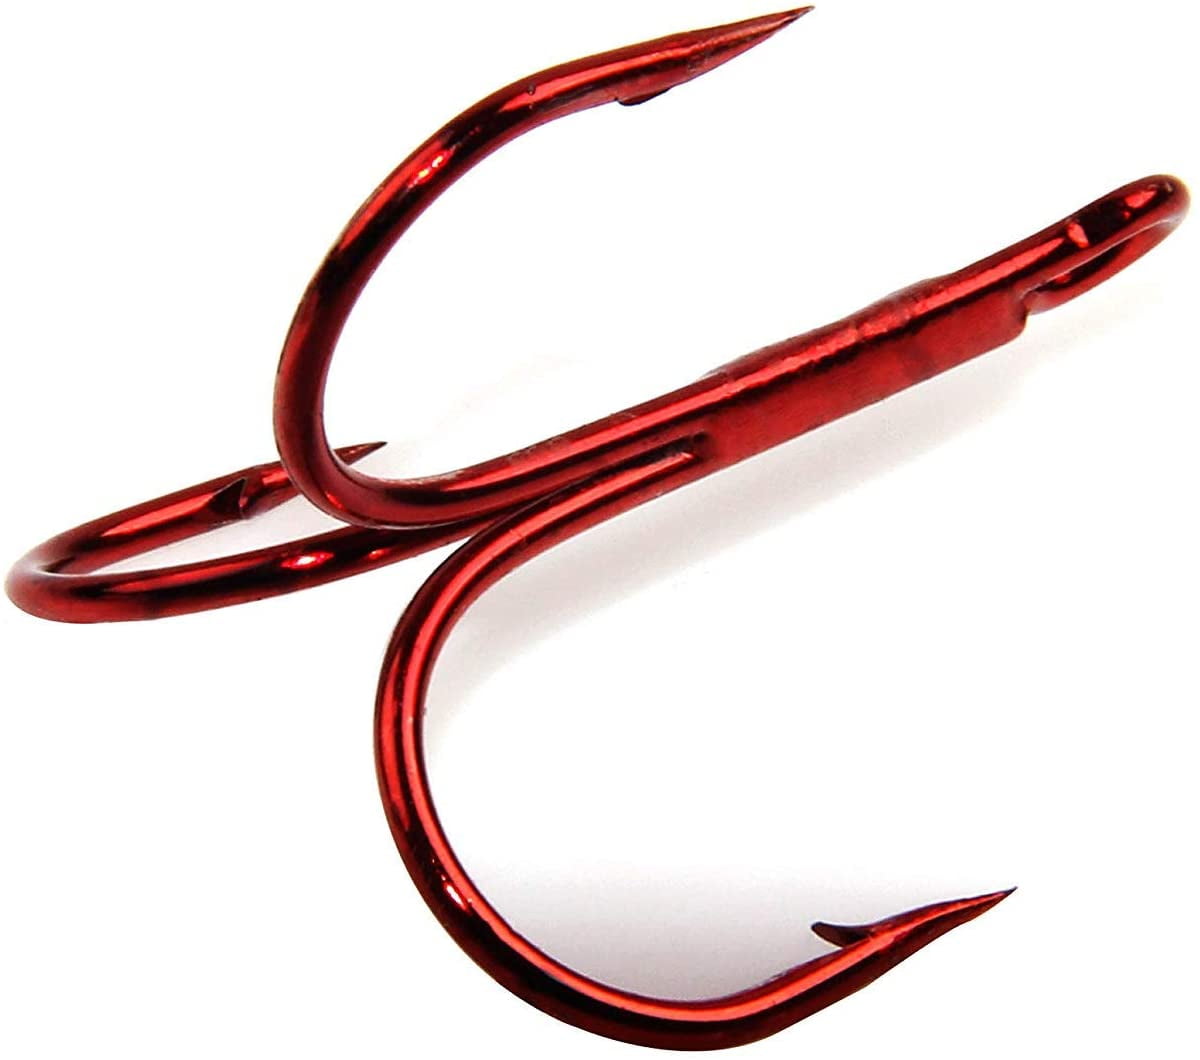 100PCS/lot Fishing Hook Sharpened Treble Hooks Fishhook Tackle Red Size 1/0#-14# 